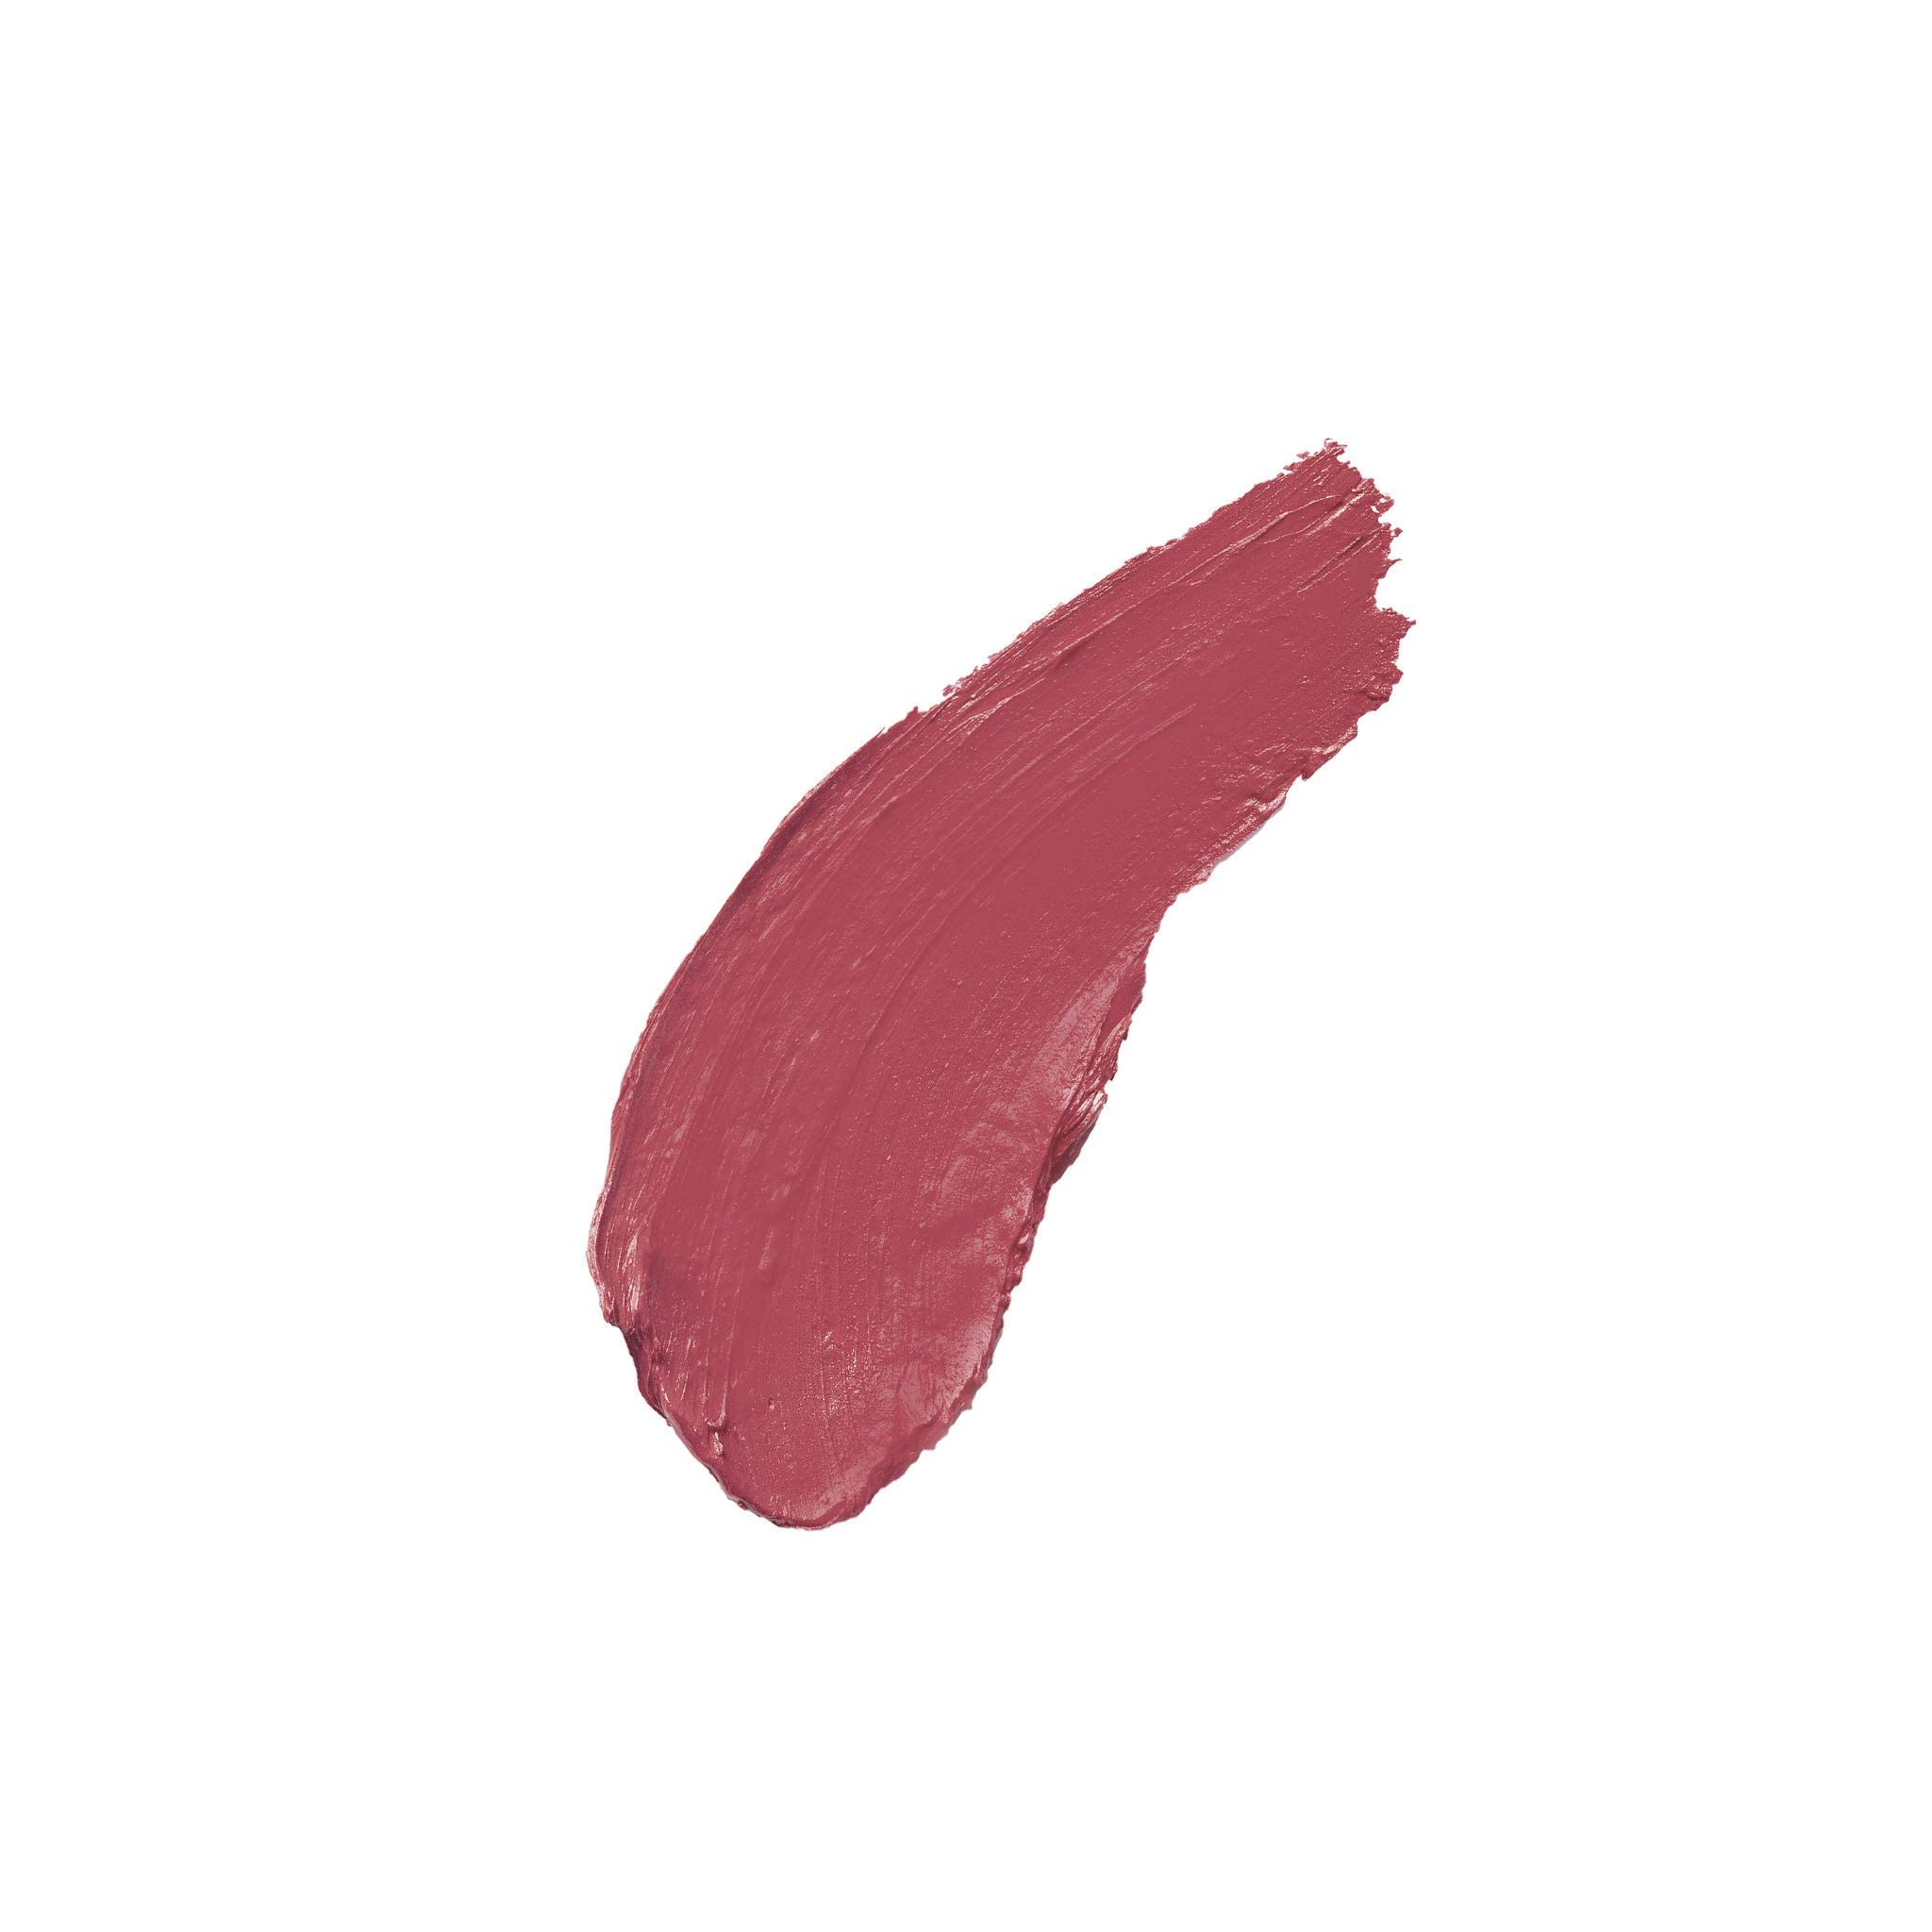 Milani Color Statement Lipstick Color Statement Lipstick - Pretty Natural, Cruelty-Free Nourishing Lip Stick in VPretty Natural 